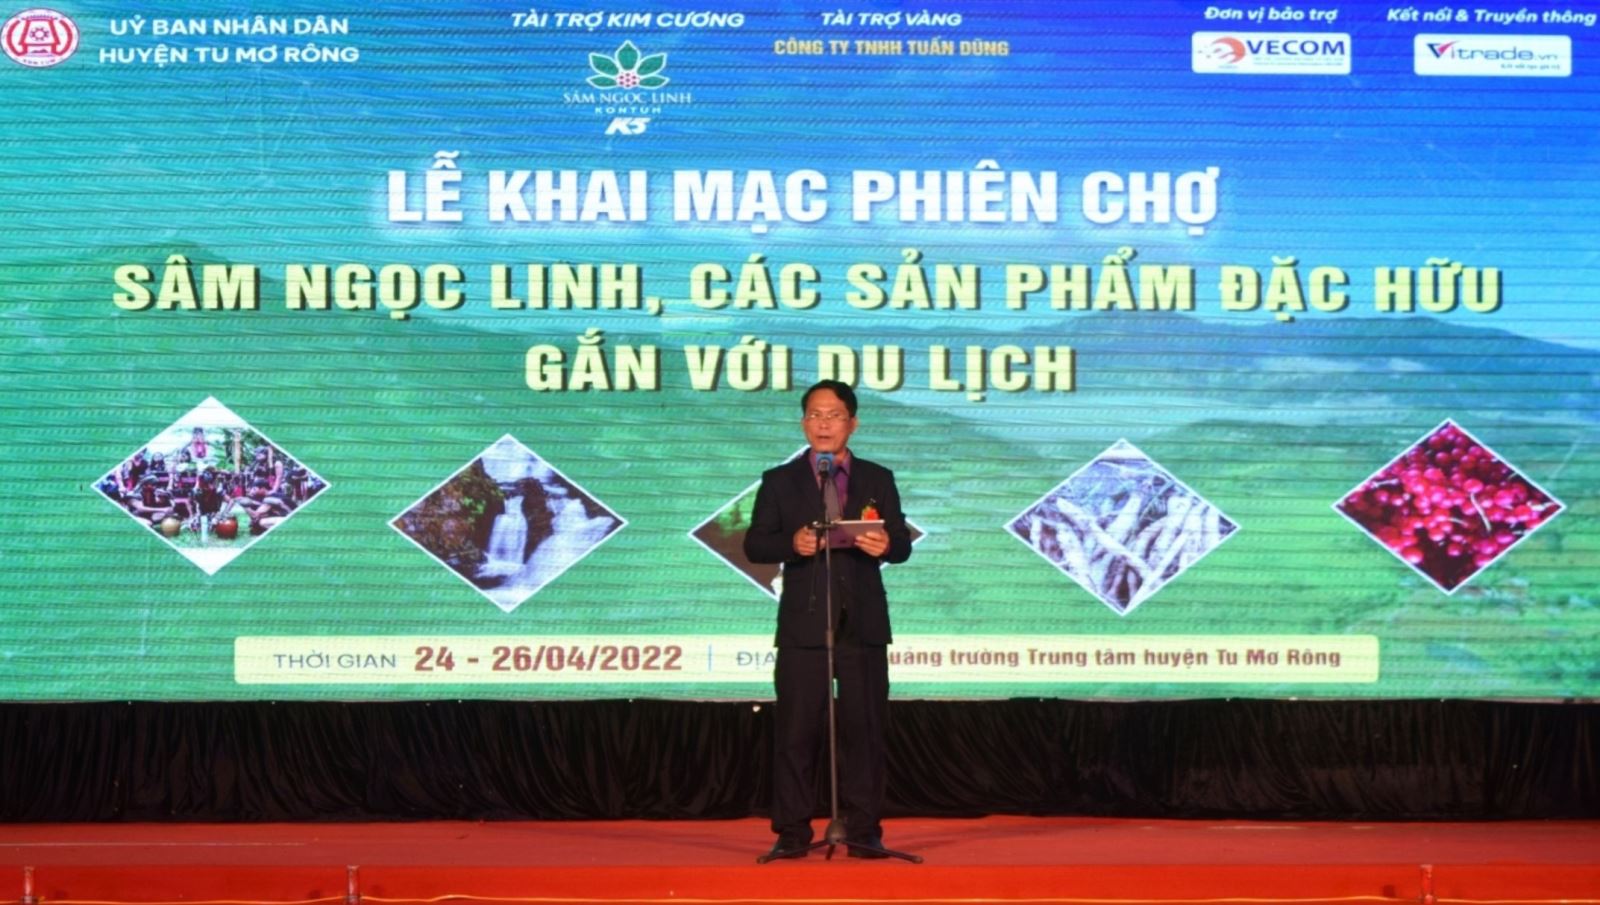 Ông Võ Trung Mạnh, Chủ tịch UBND huyện Tu Mơ Rông phát triển cây sâm, dược liệu và phát triển du lịch là con đường để đồng bào dân tộc Xê Đăng địa phương thoát nghèo, hướng tới làm giàu.